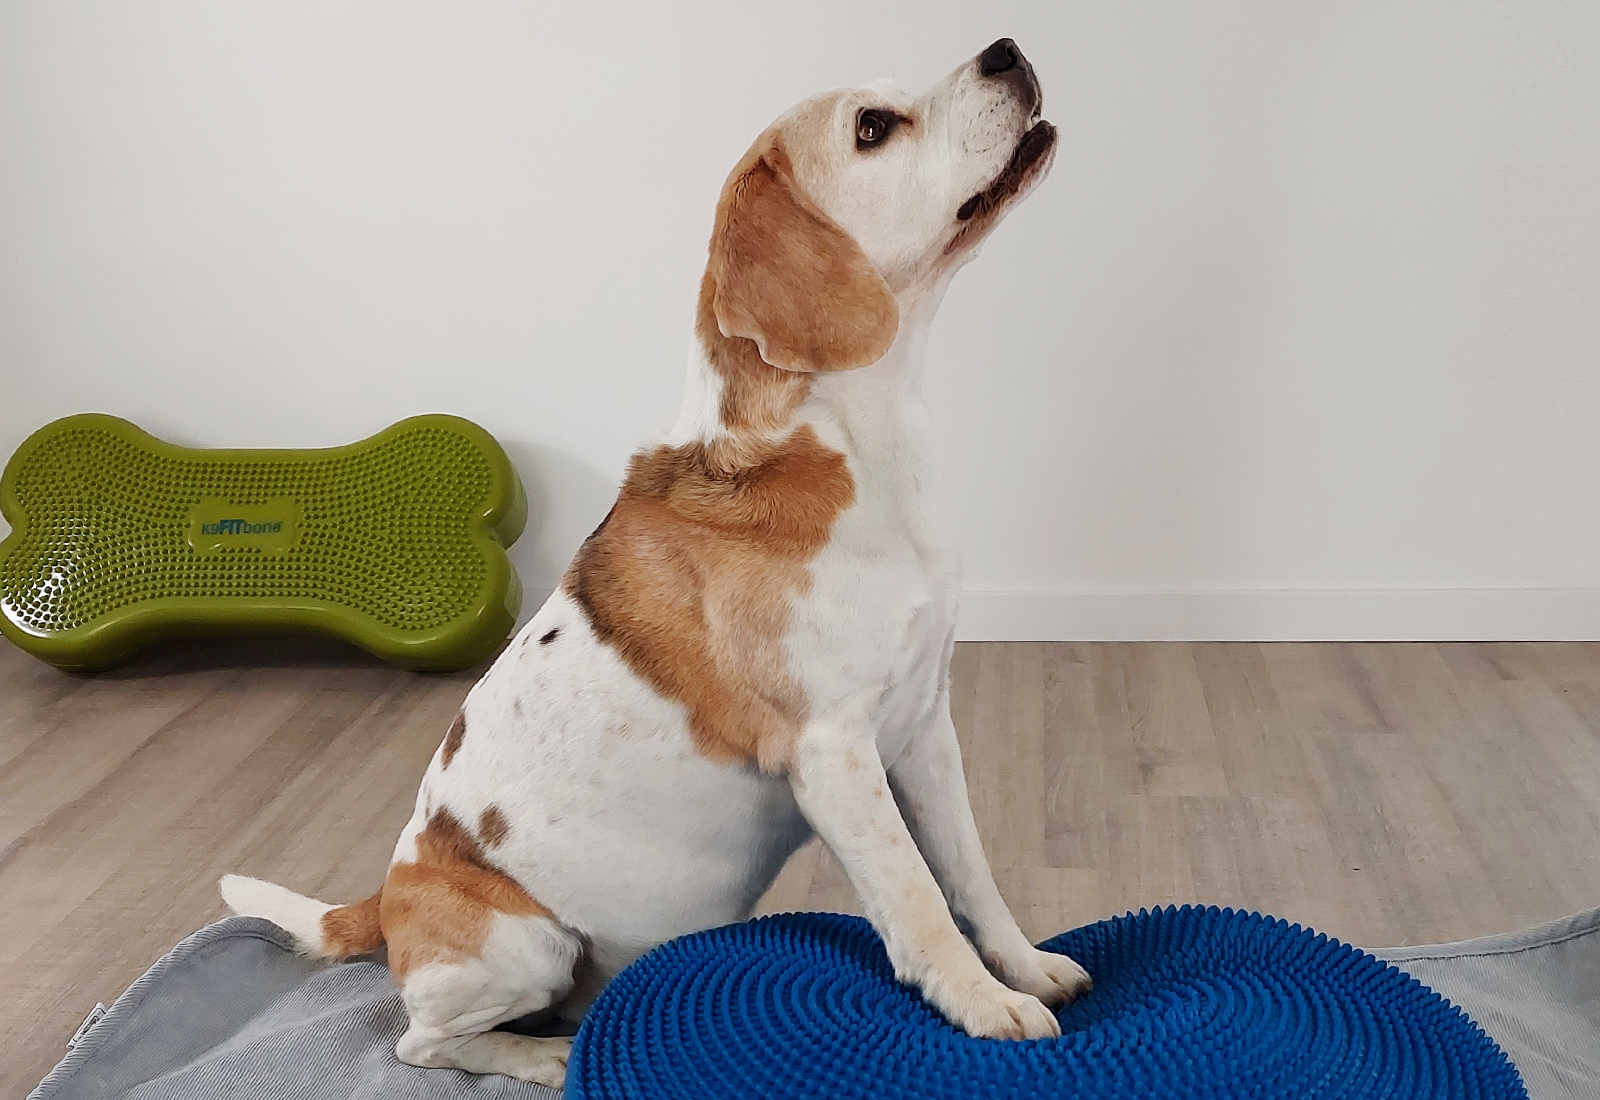 Aktive Übungen Training für Hund und Pferd Köln Tierphysiotherapie Balance Pad Fitbone Peanut Muskelaufbau Rückenmuskulatur stärken Sehnenerkrankungen